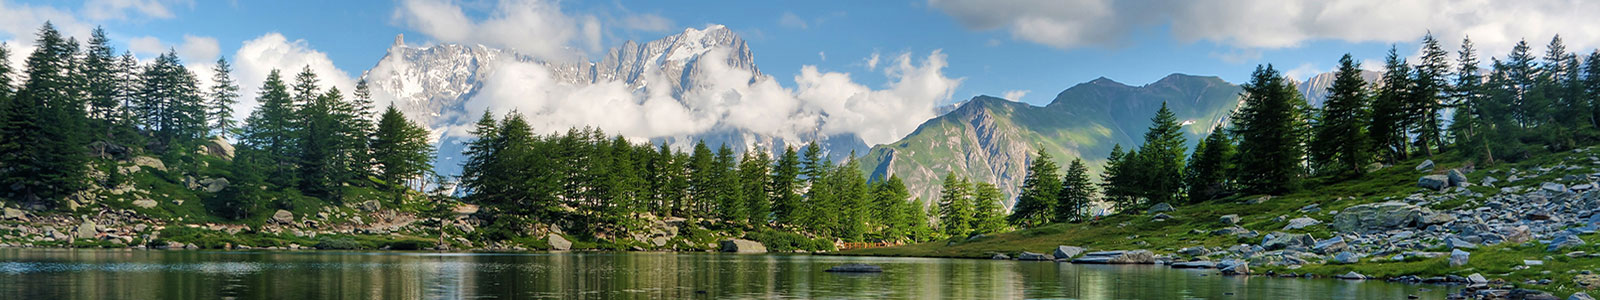 №1904 - Горное озеро на фоне зеленого леса и заснеженных скал